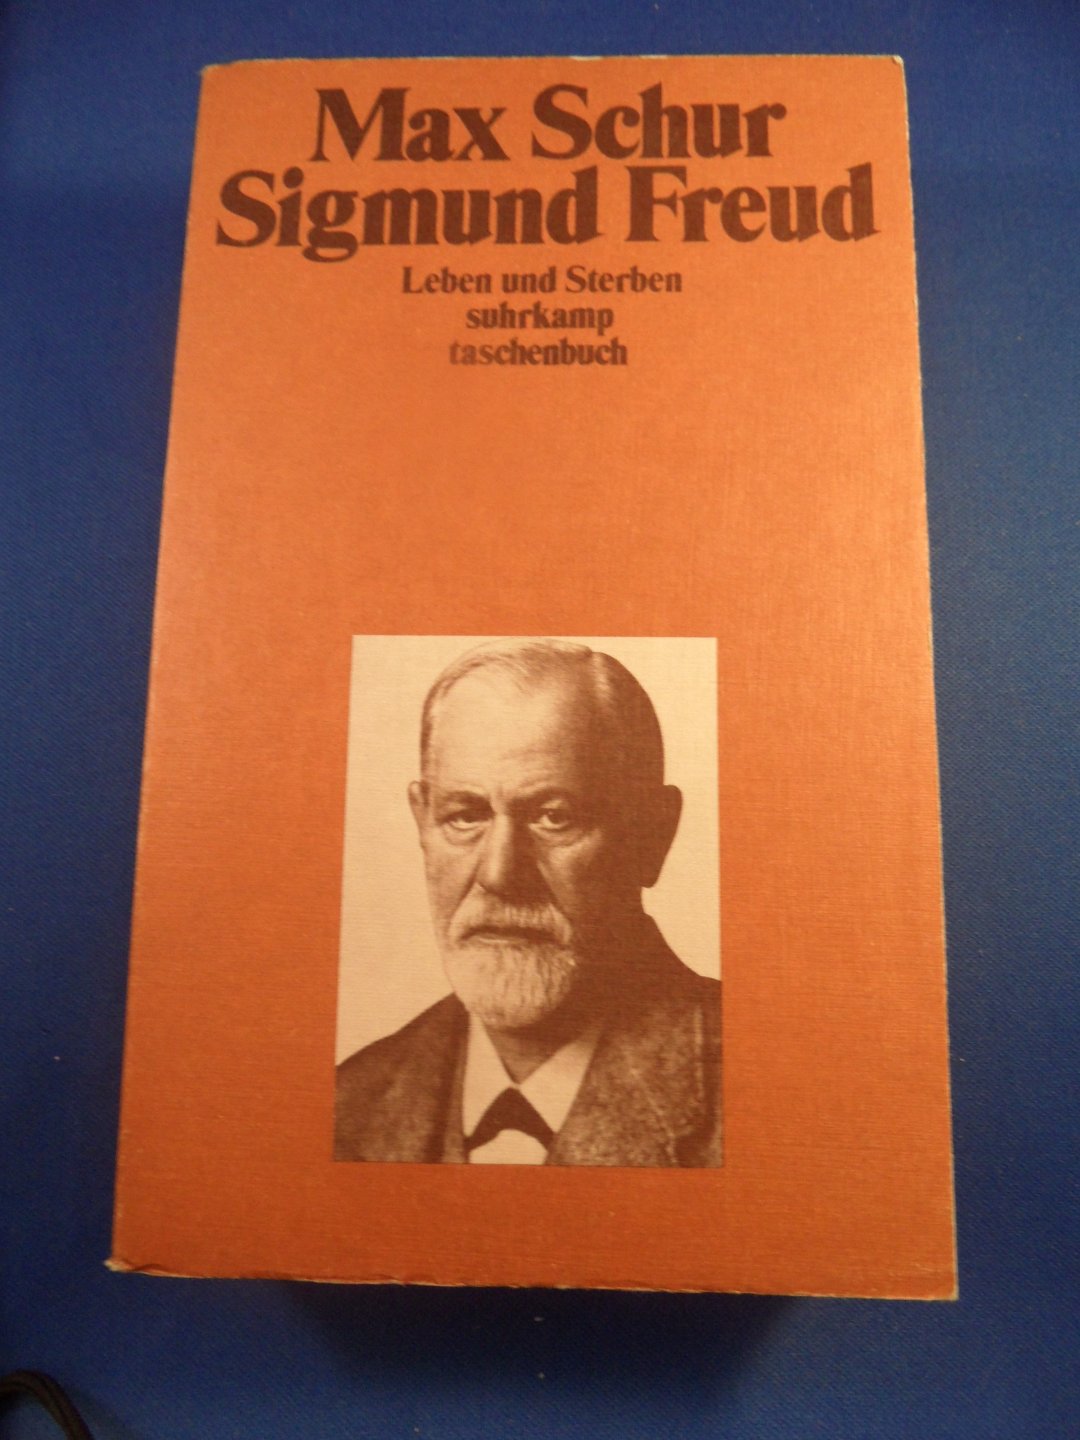 Schur, Max - Sigmund Freud Leben und Sterben